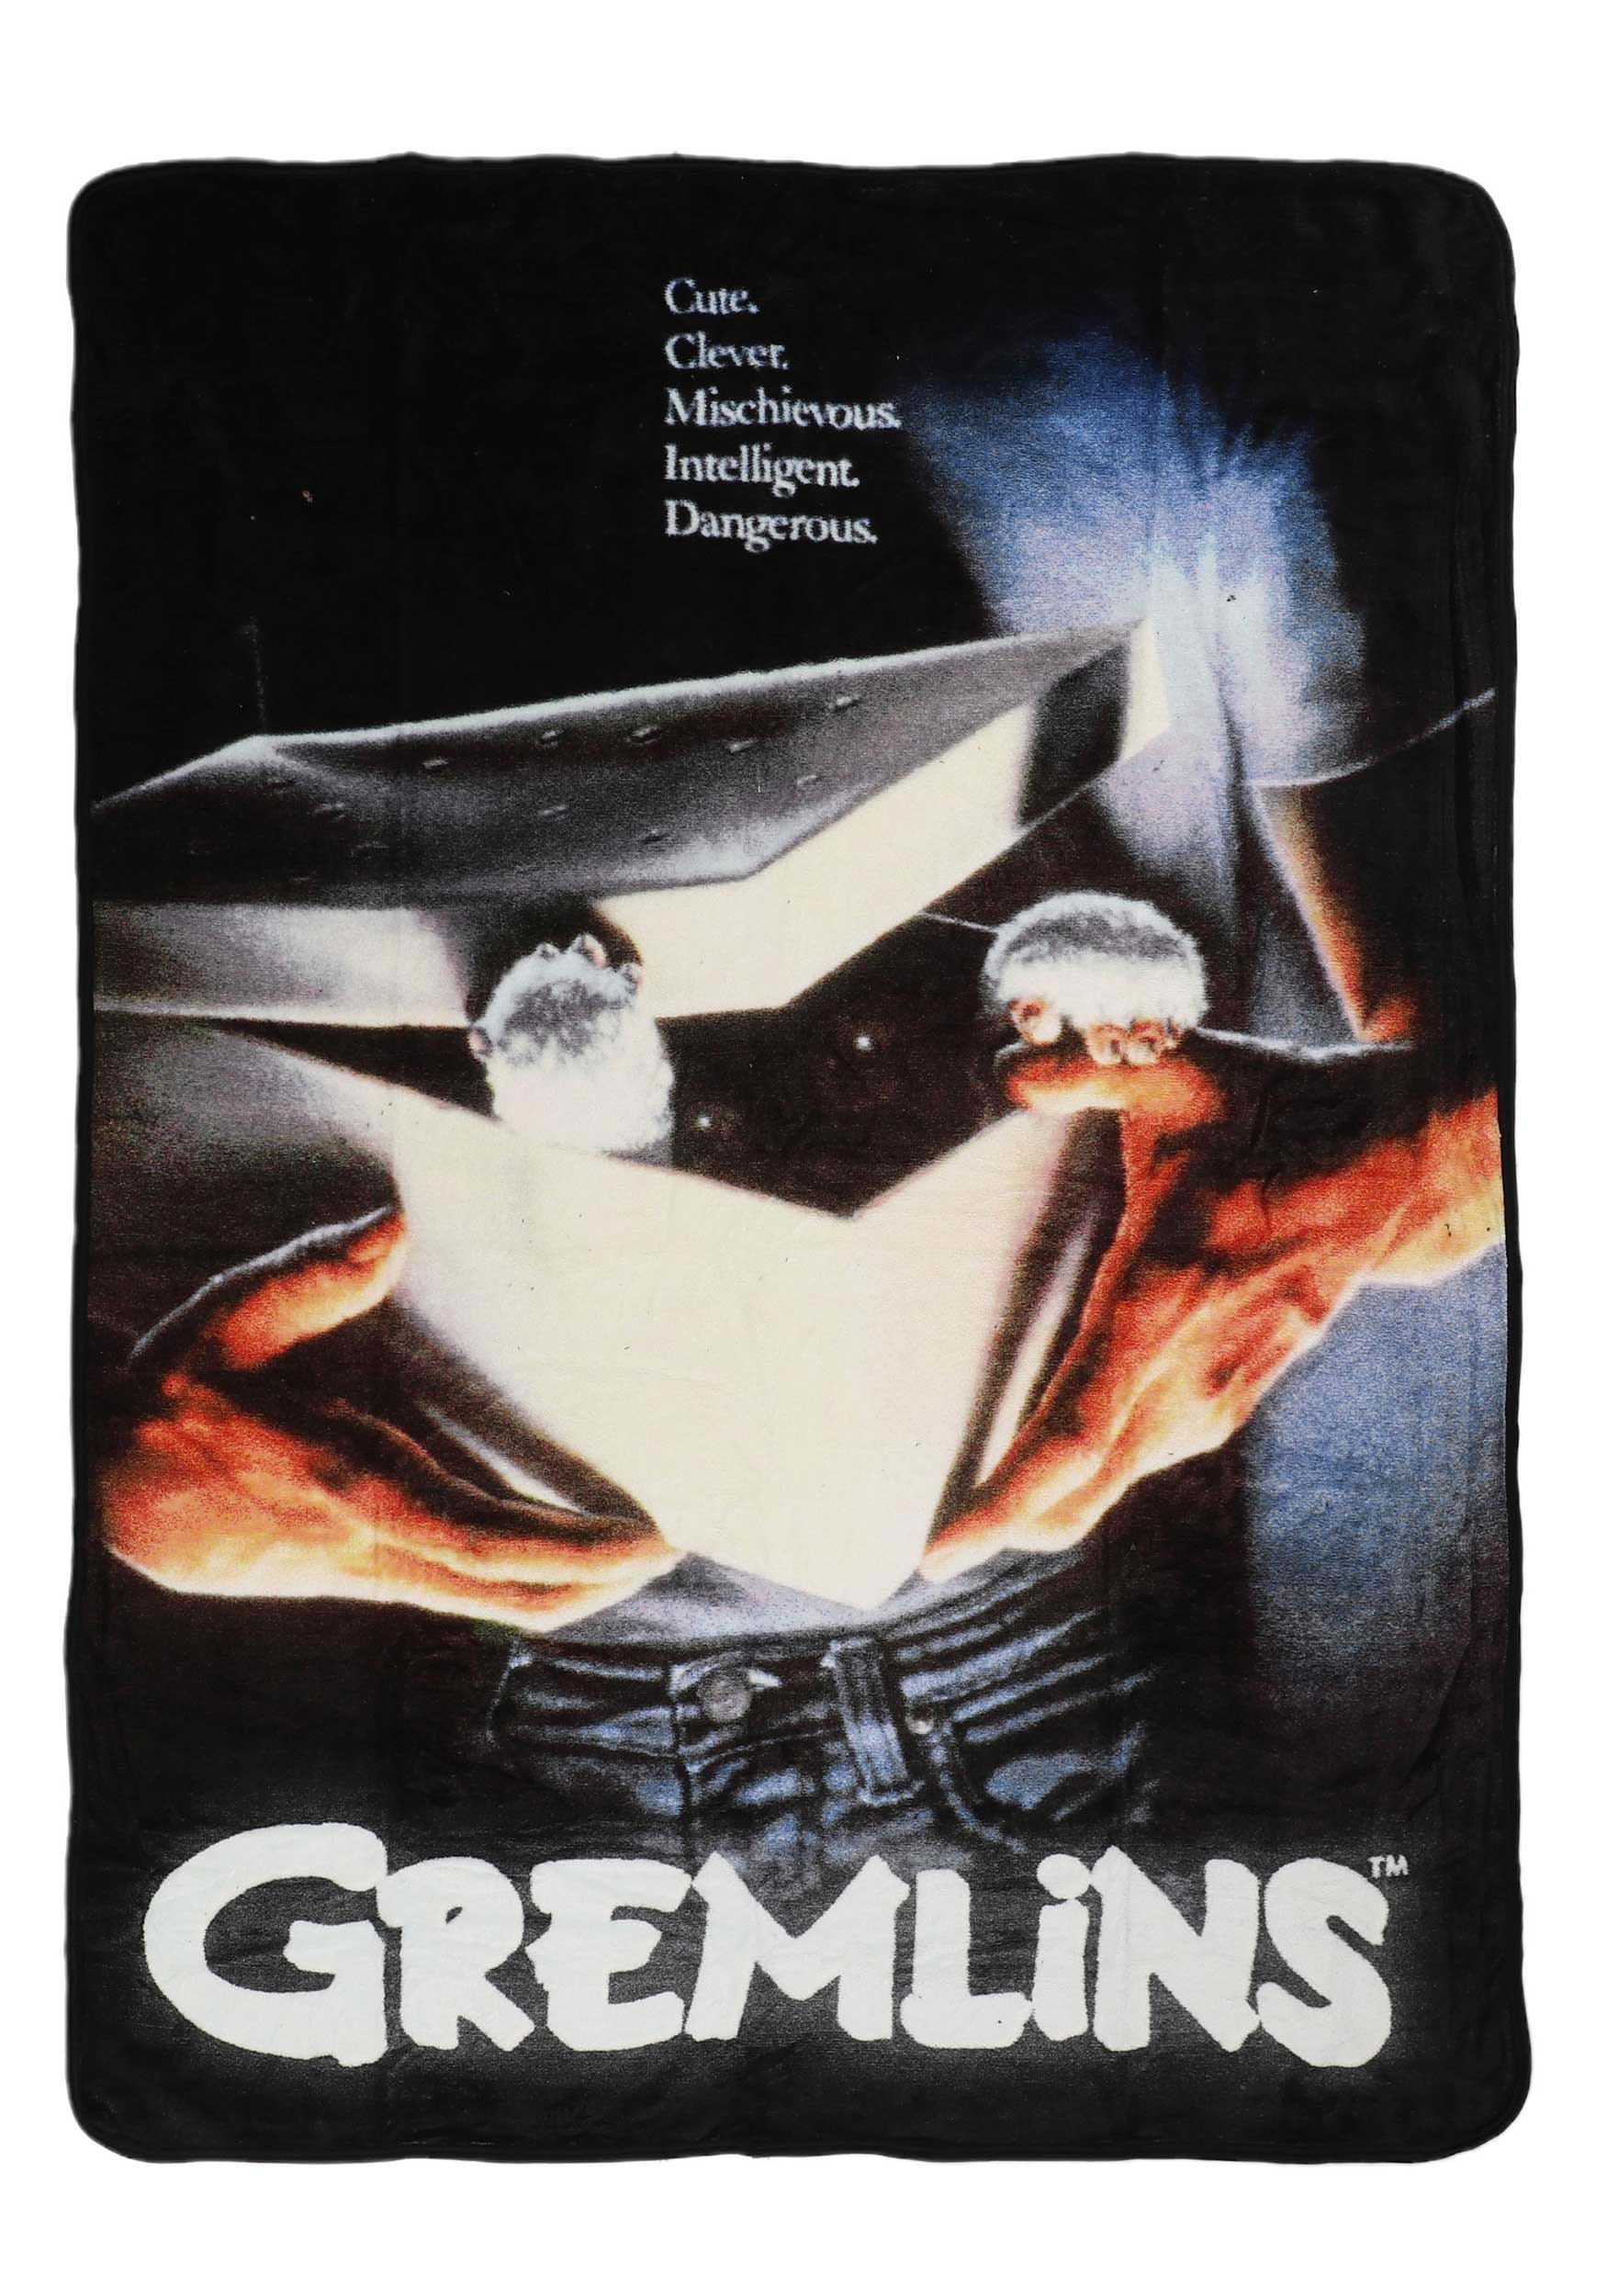 Gremlins Dangerous Movie Poster Micro Raschel Comfy Throw Blanket